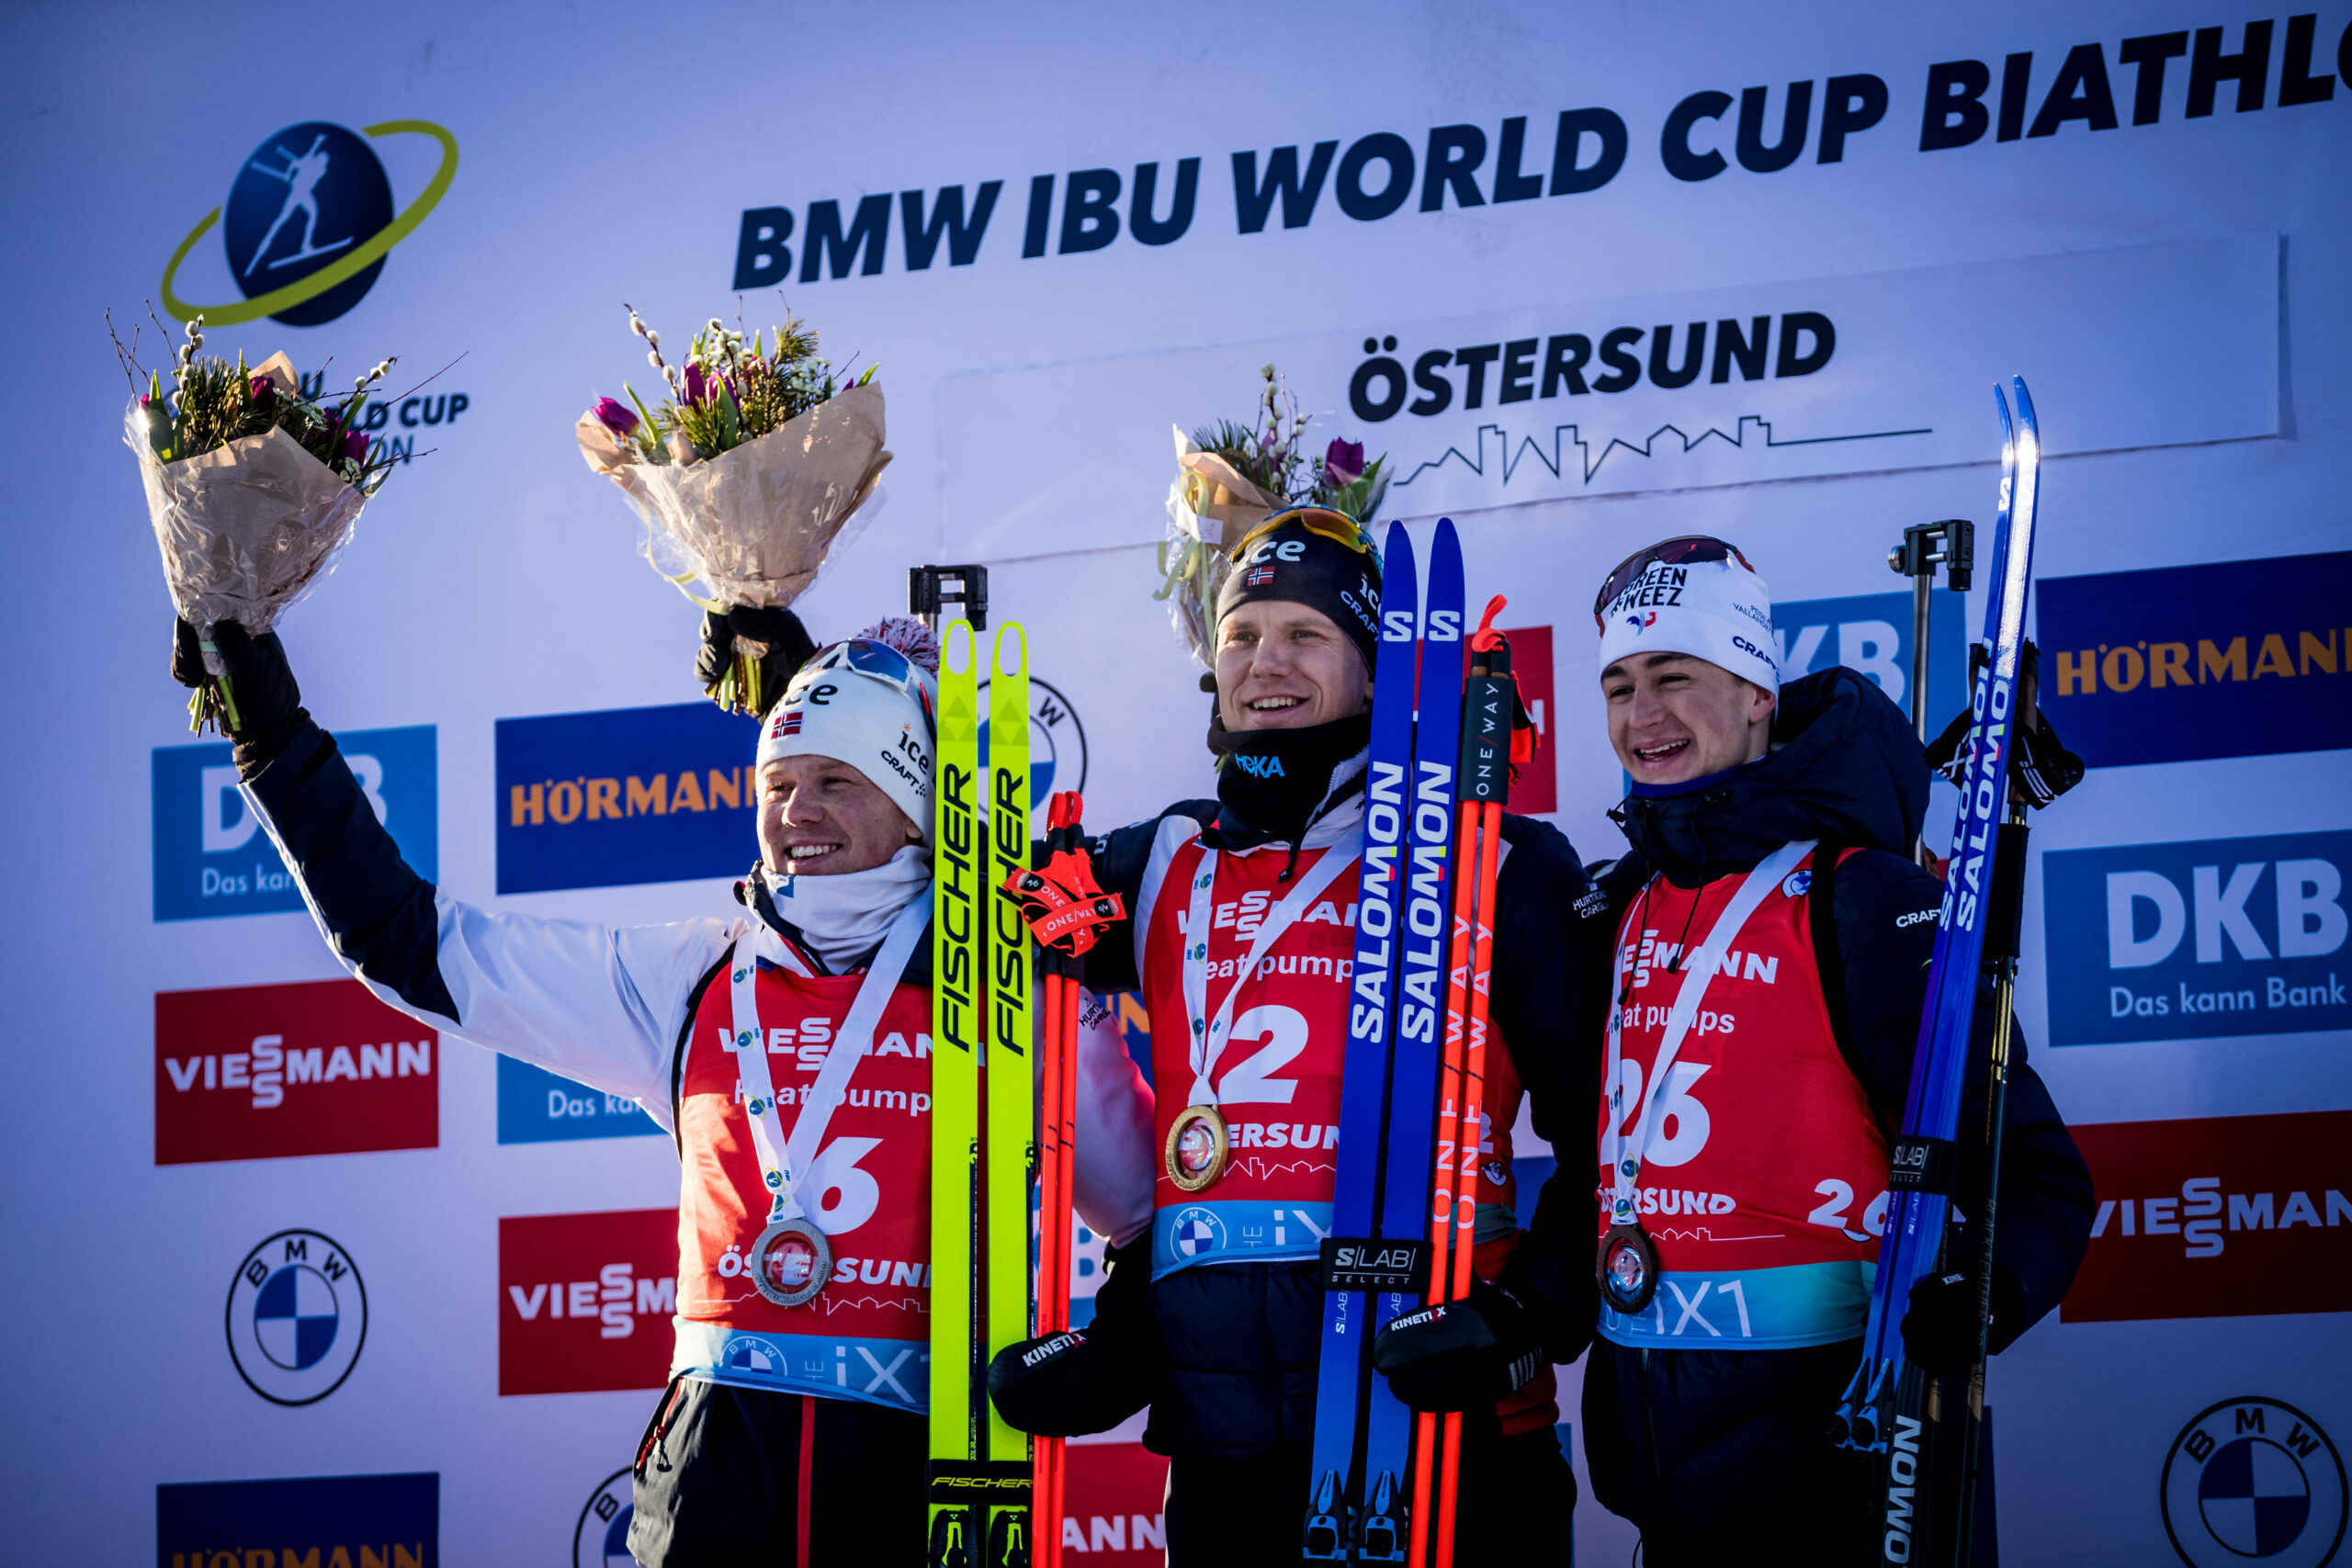 Siegerehrung beim Biathlon-Weltcup in Östersund